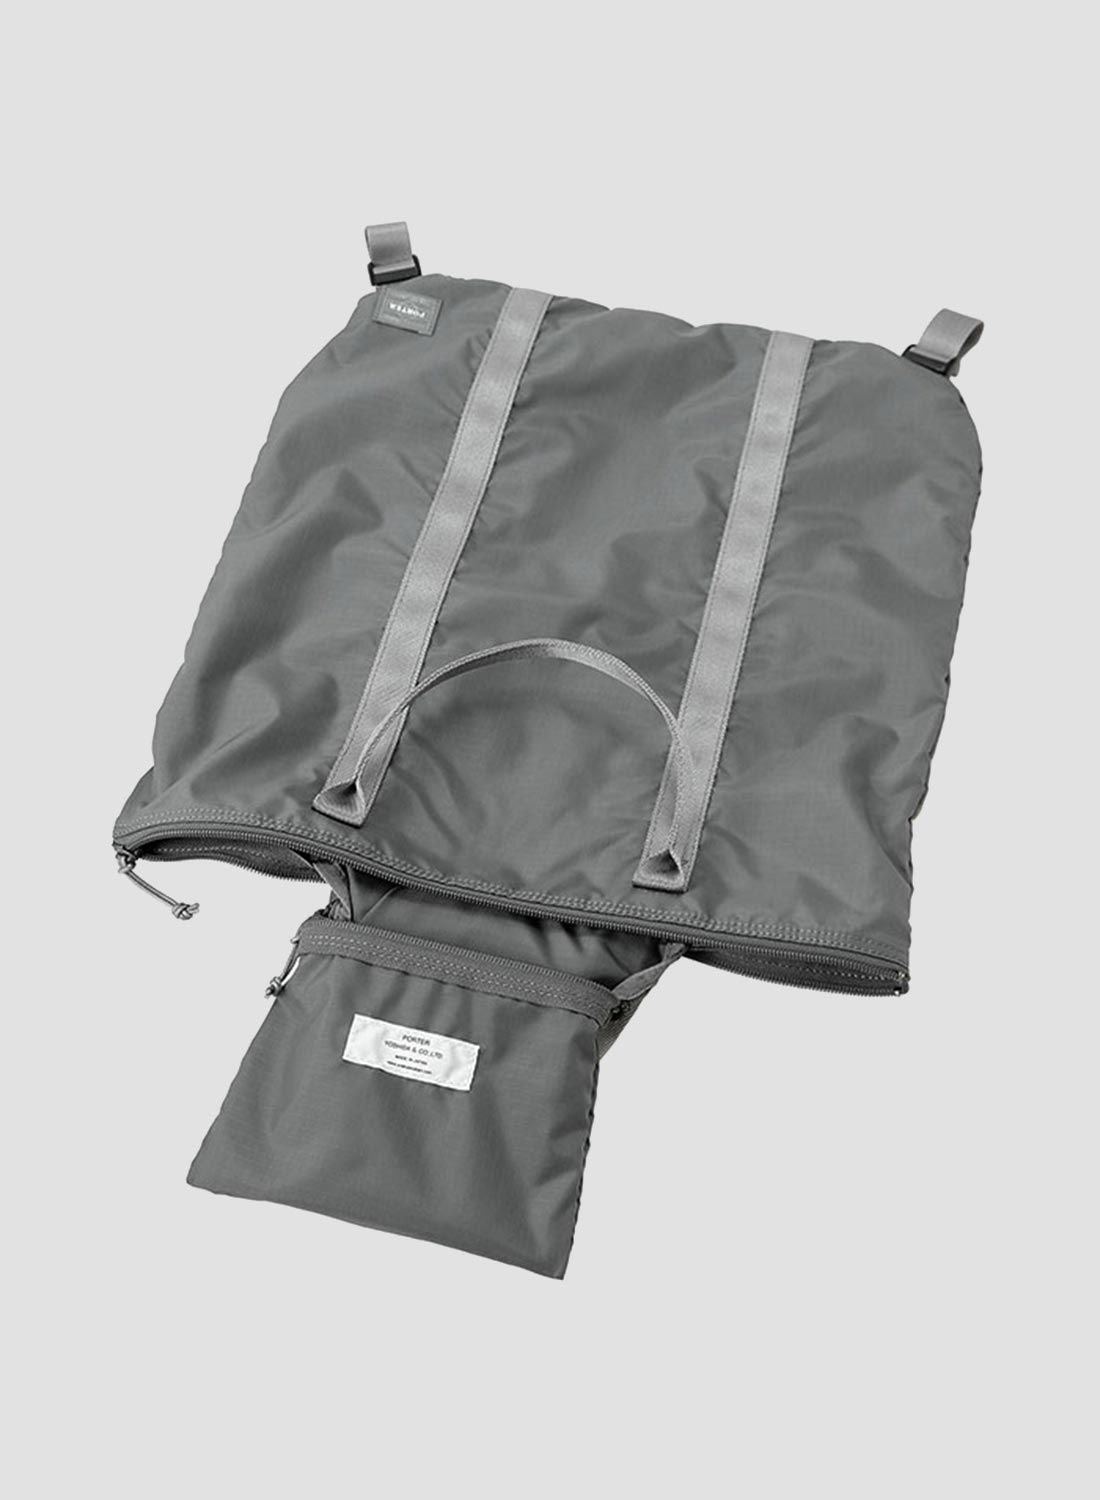 Porter-Yoshida & Co Flex 2-Way Tote Bag in Grey - 4